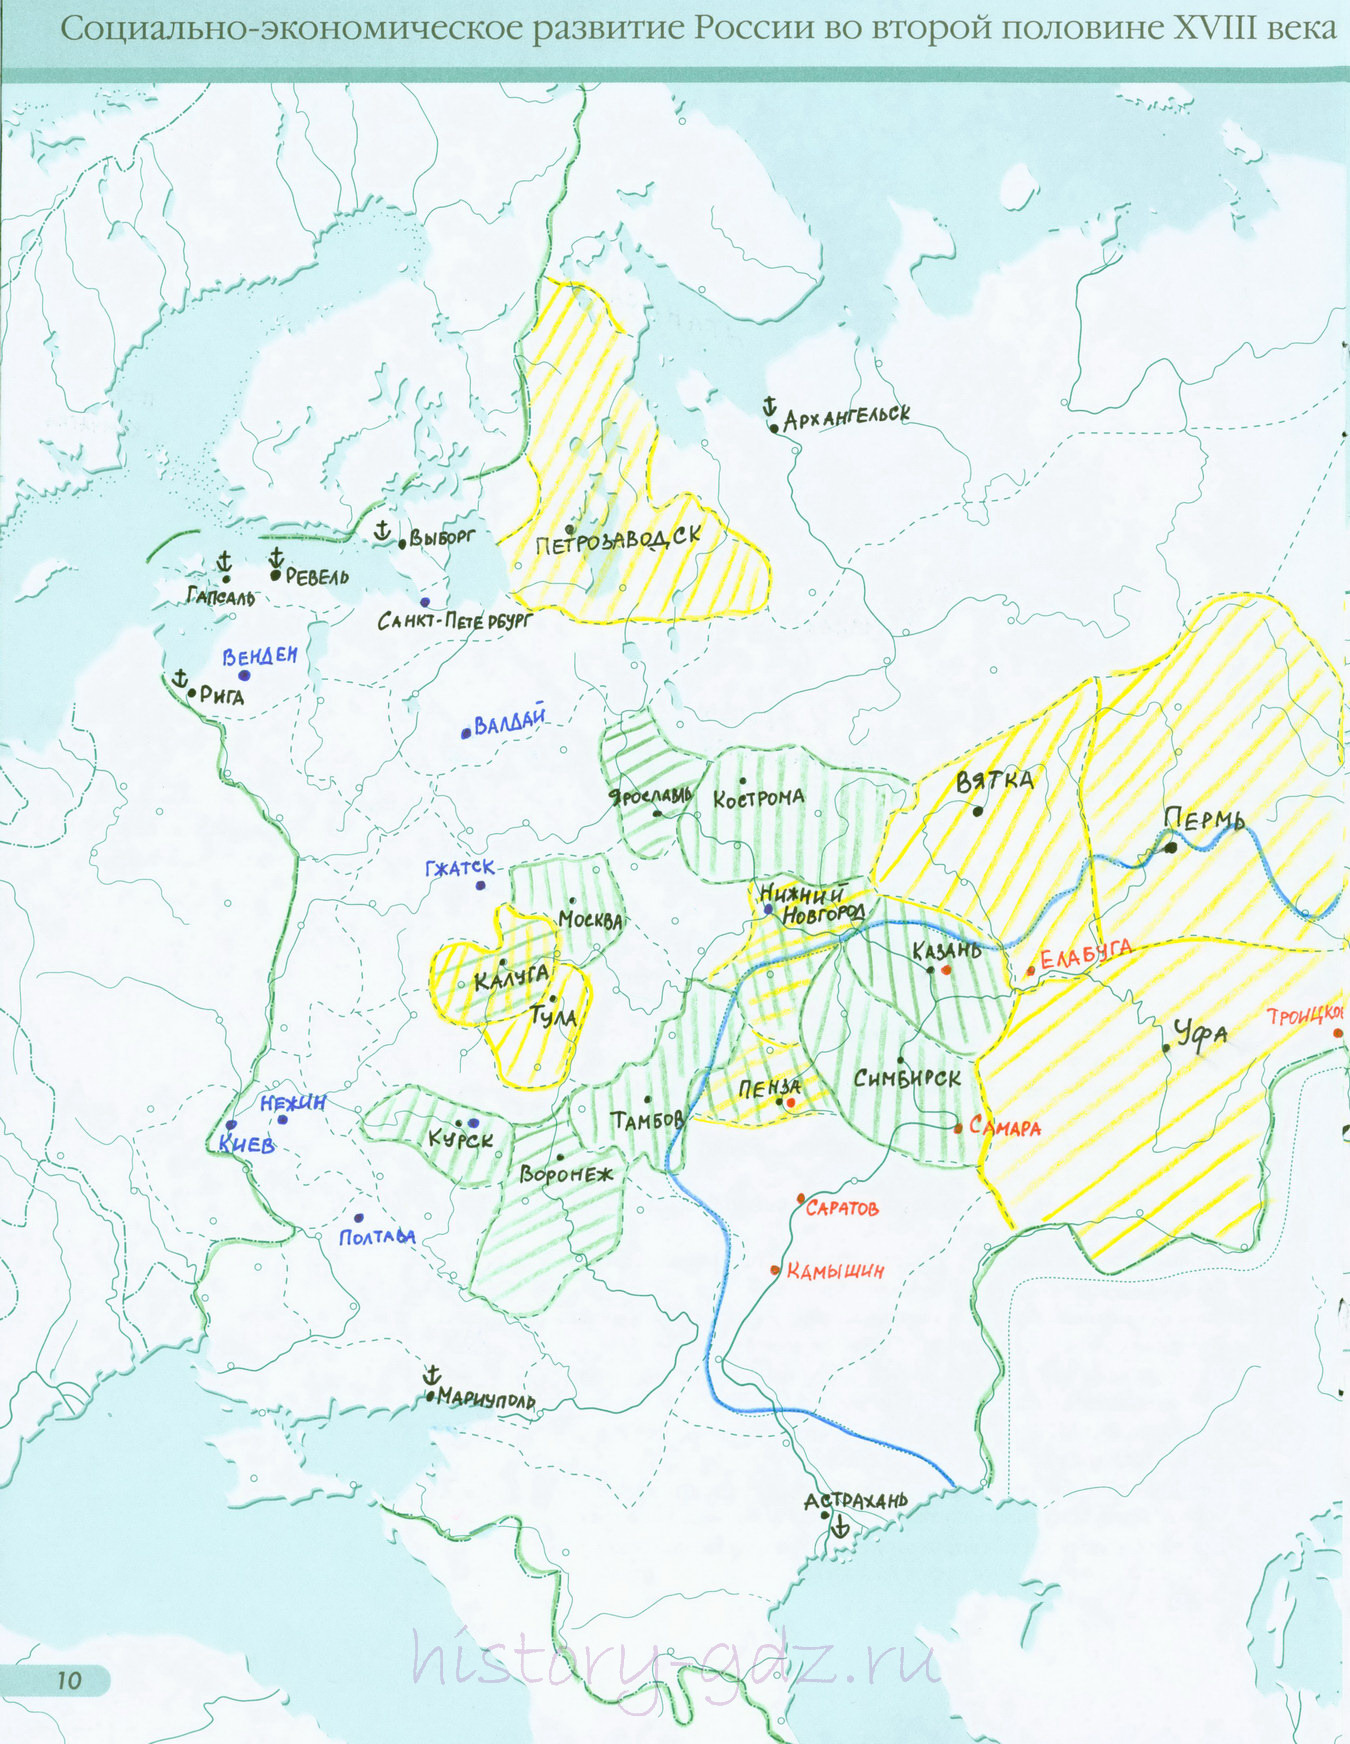 Карта российское государство во второй половине 15 века начале 16 века